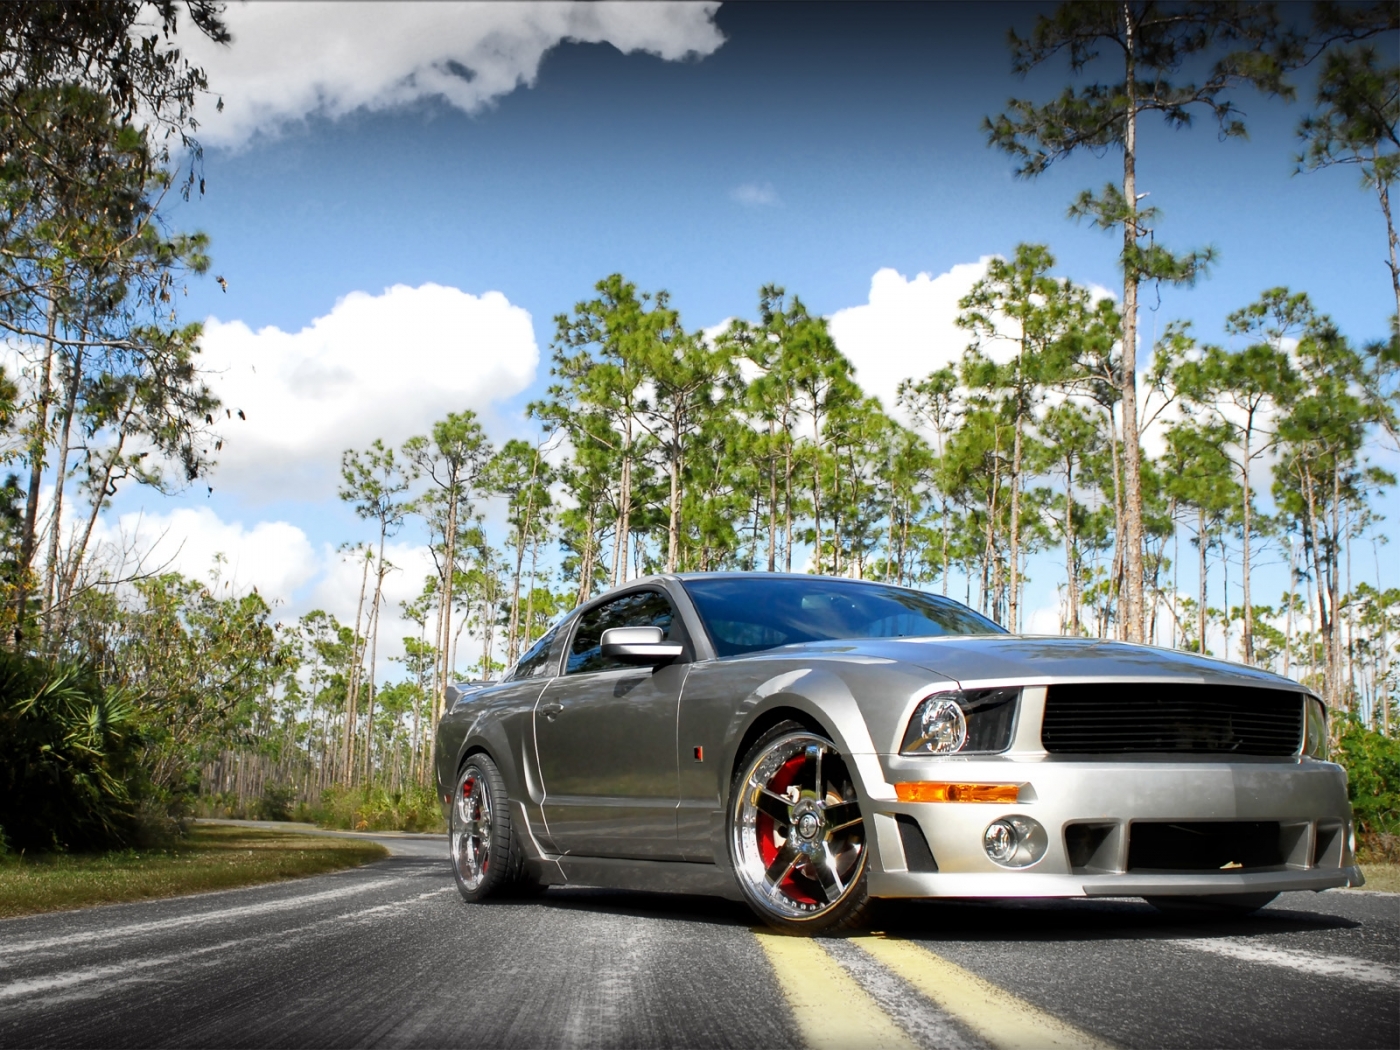 Mustang HD photos